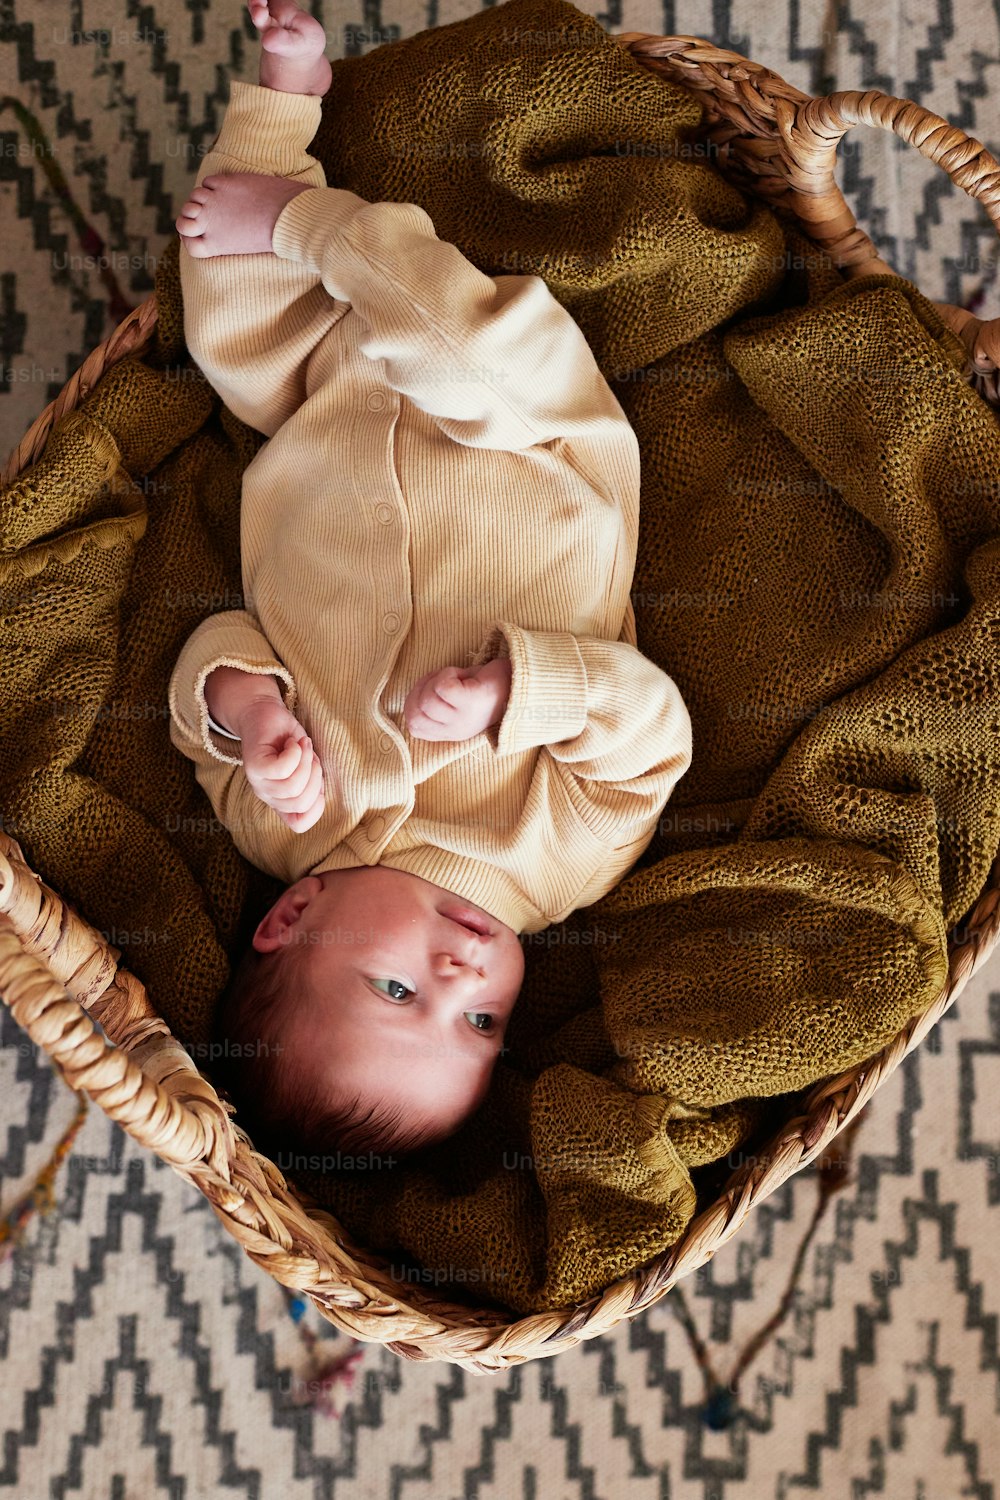 양탄자 위의 바구니에 누워 있는 두 아기